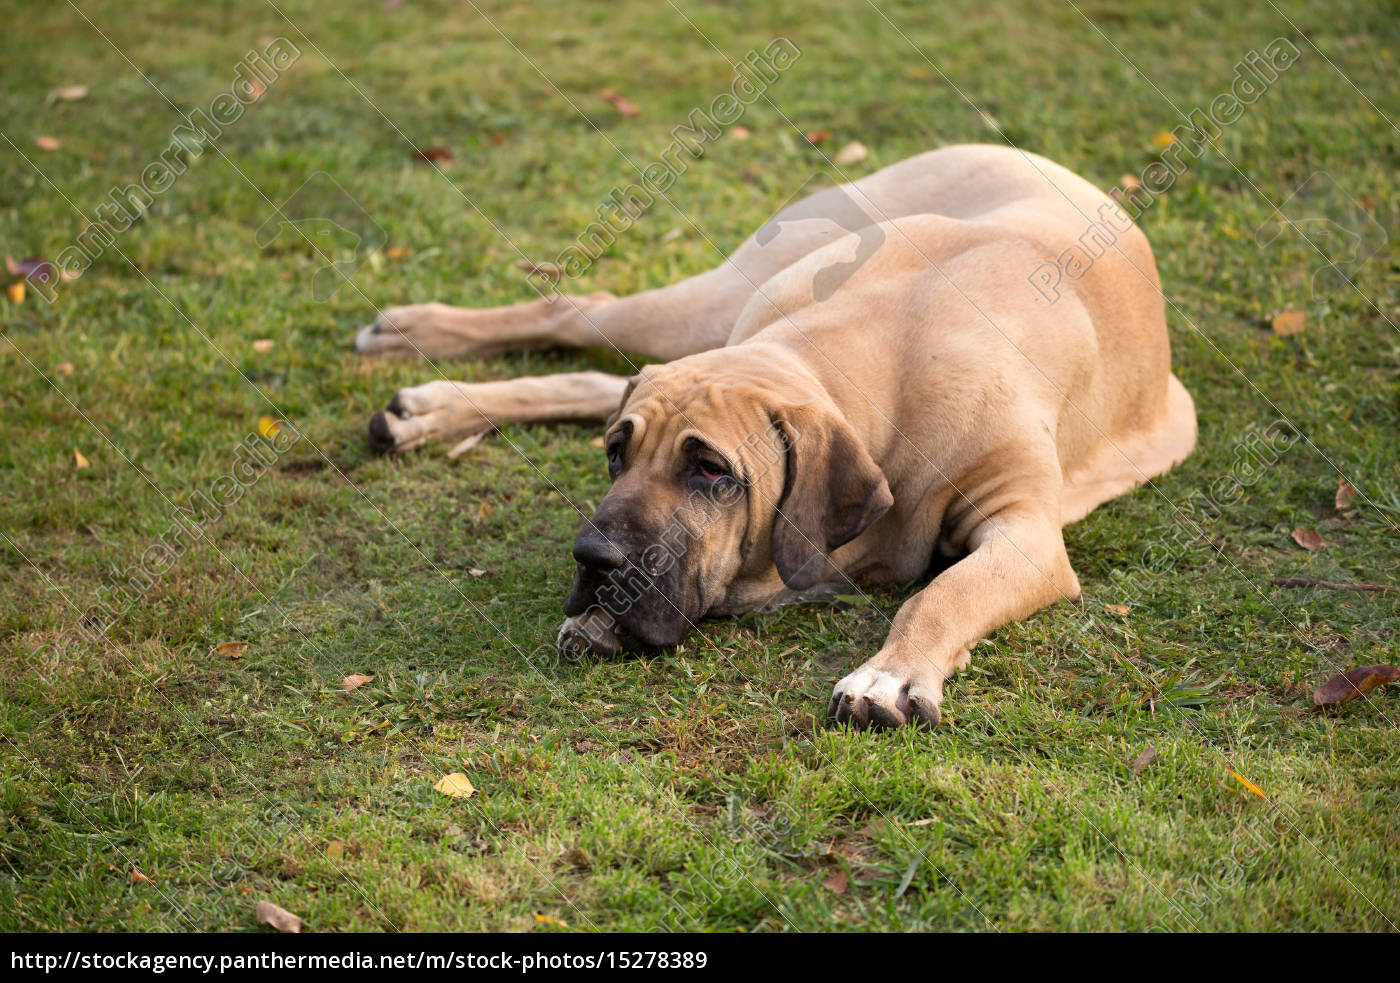 Fila Brasileiro Breed Dog Puppy In A Garden Stock Photo, Picture